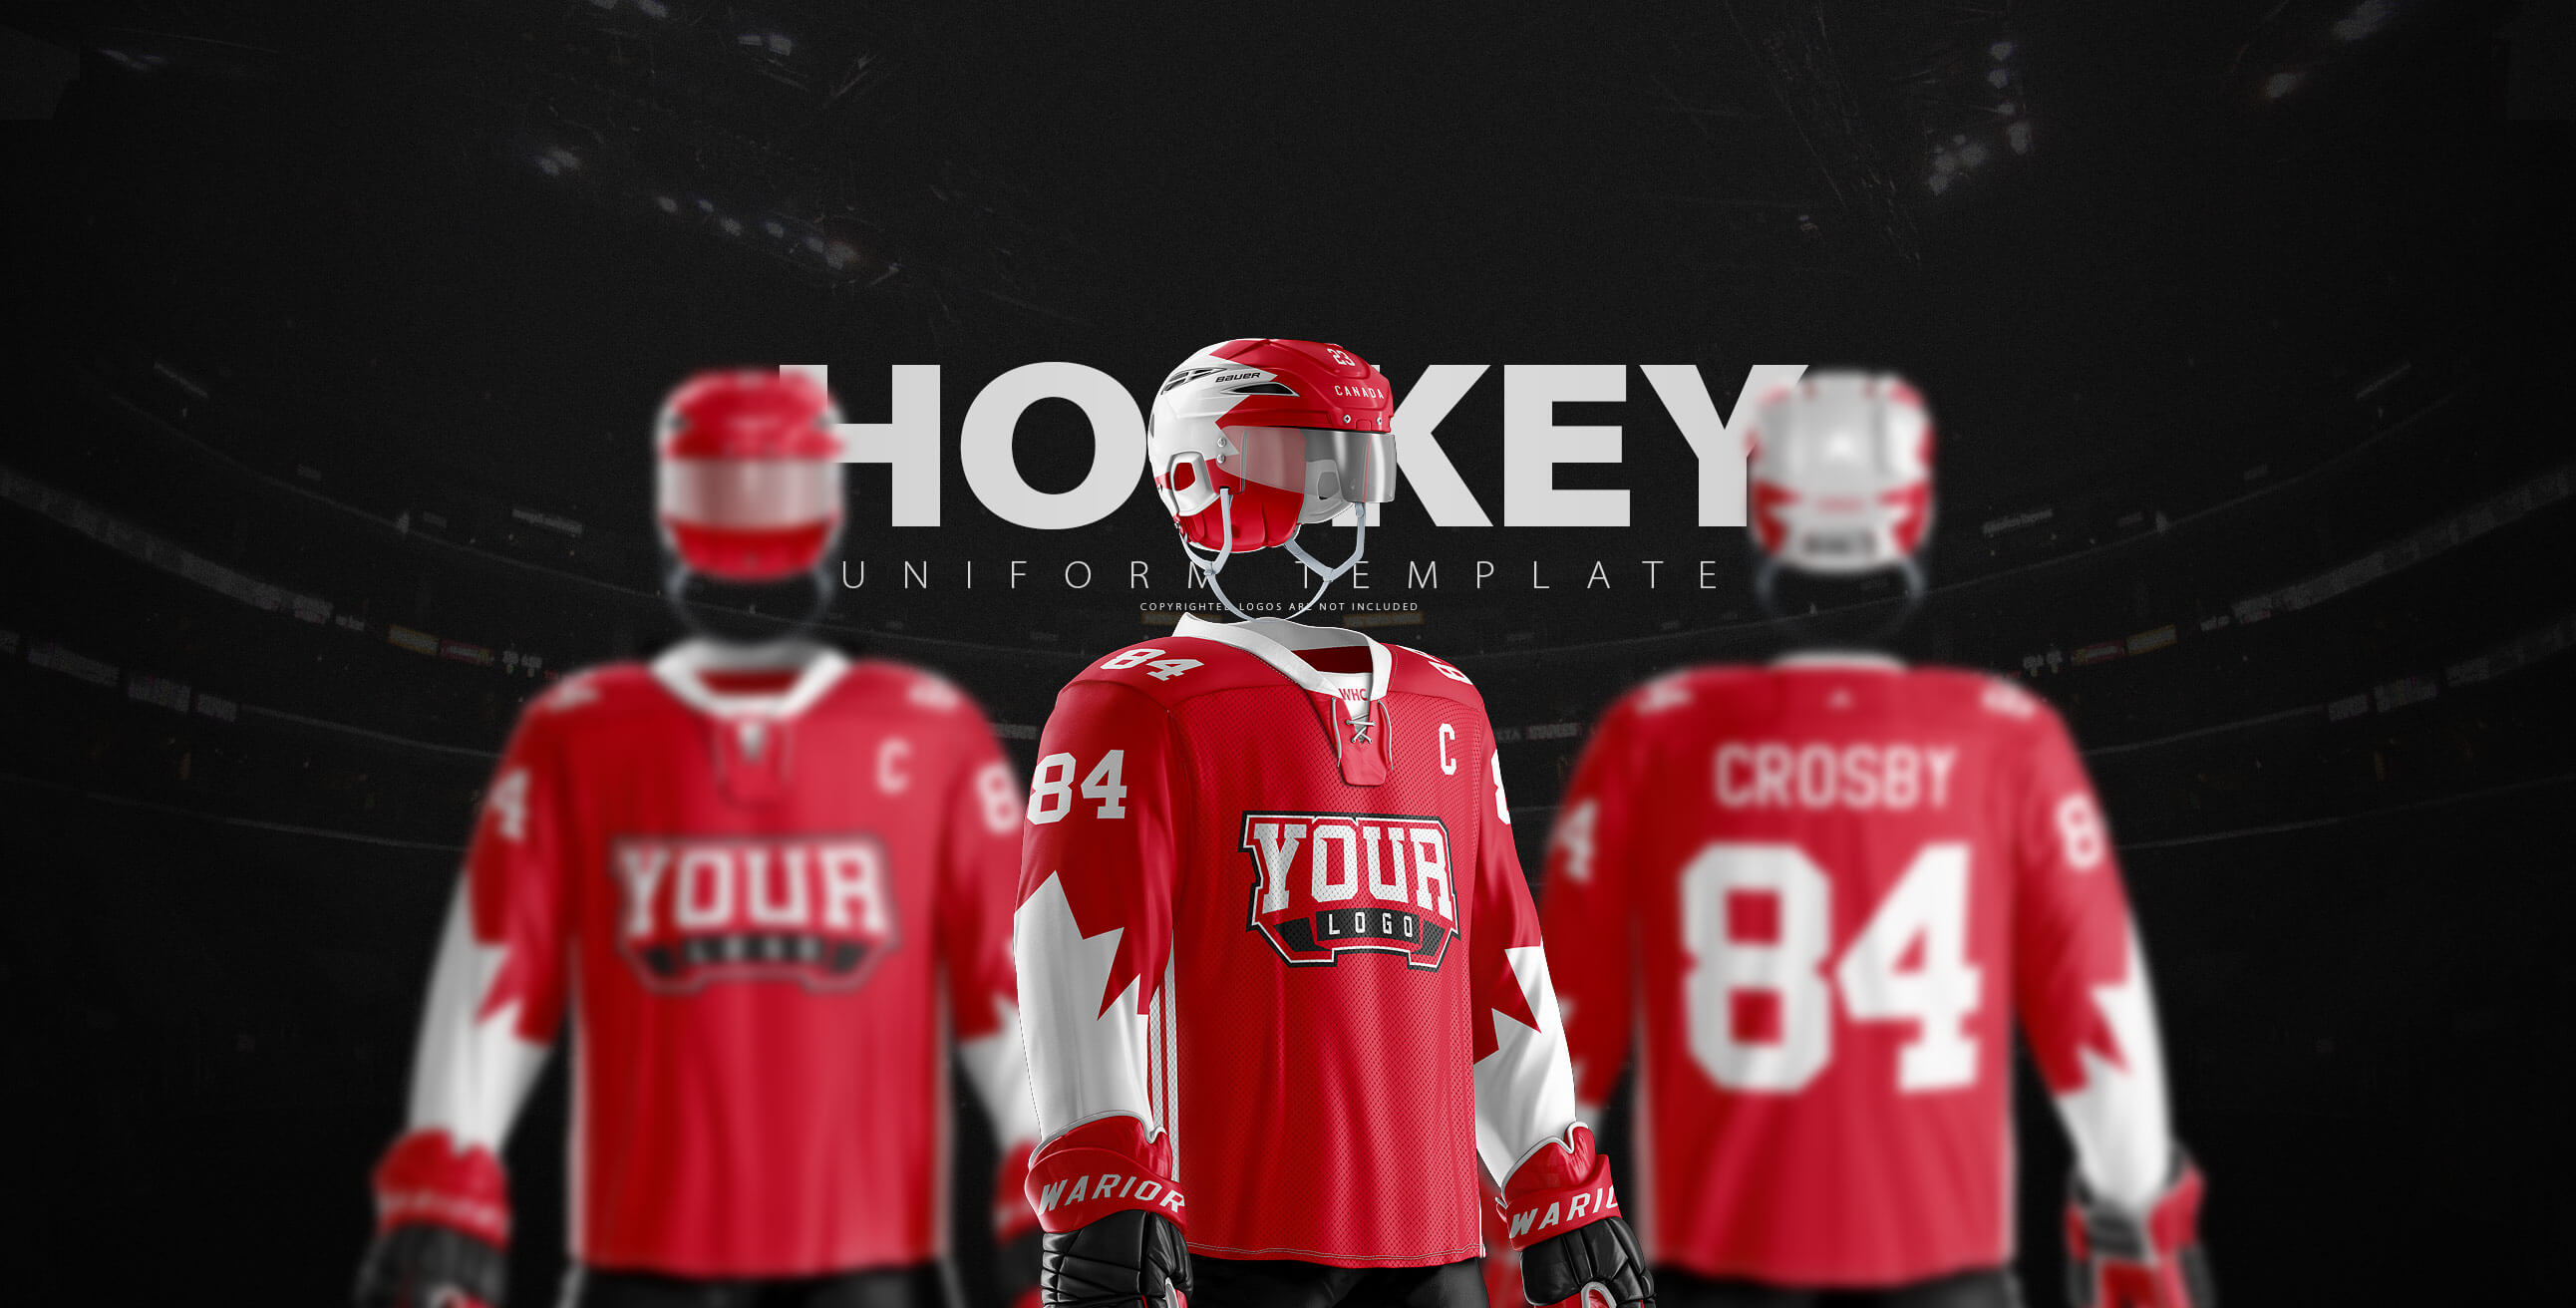 冰球服棍球制服运动头盔服装设计提案样机PSD模板 Ice H